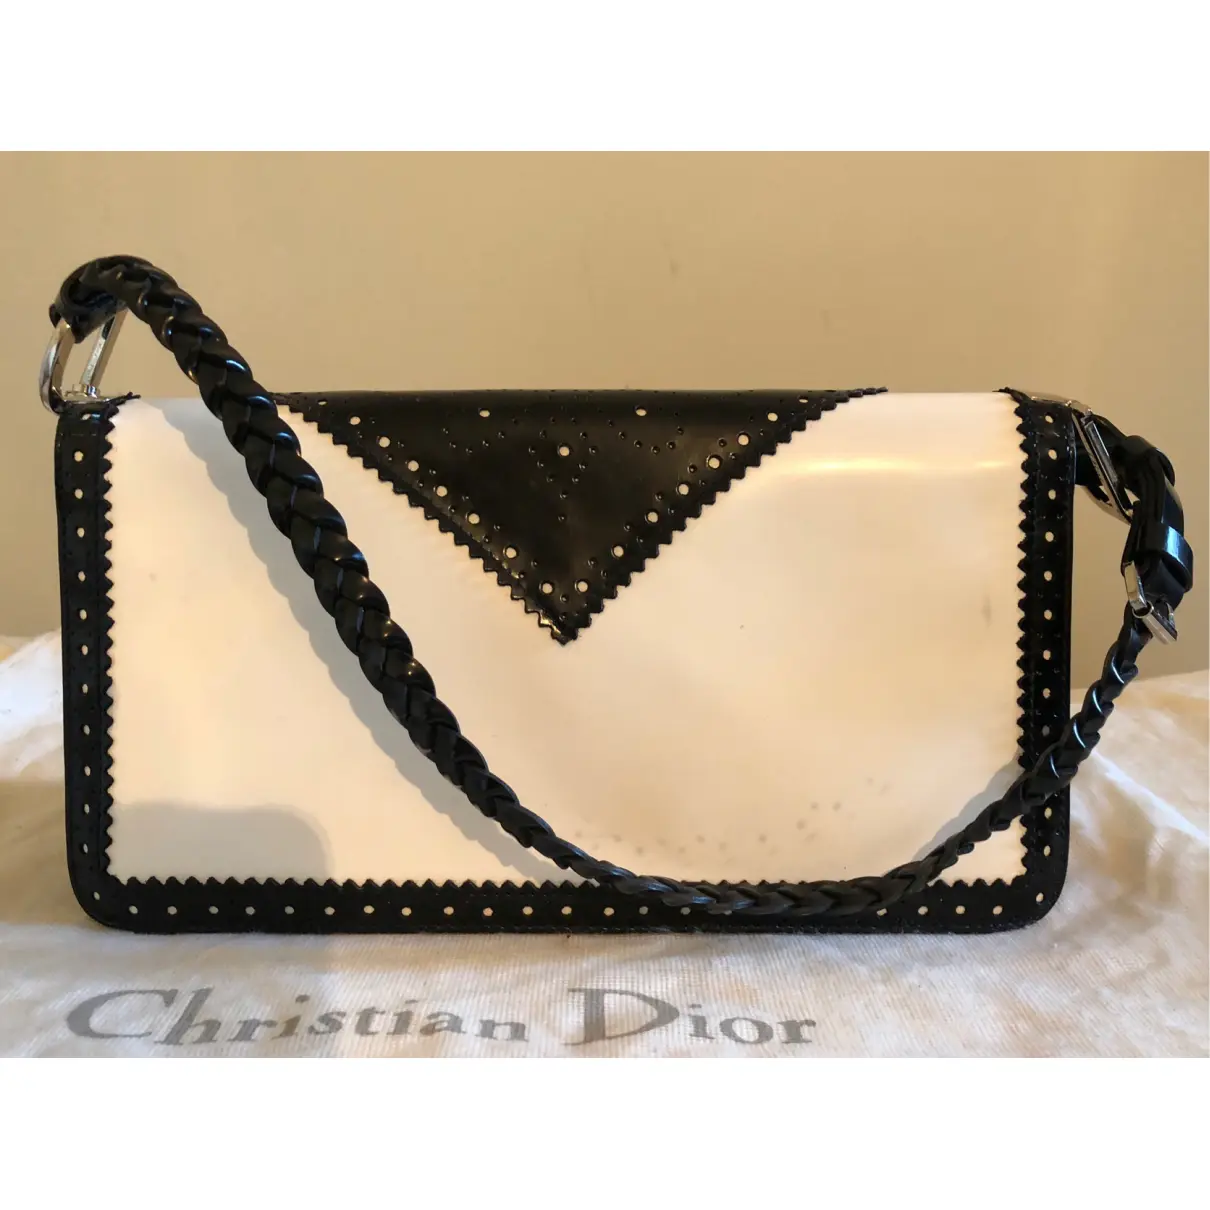 Buy Dior Patent leather handbag online - Vintage